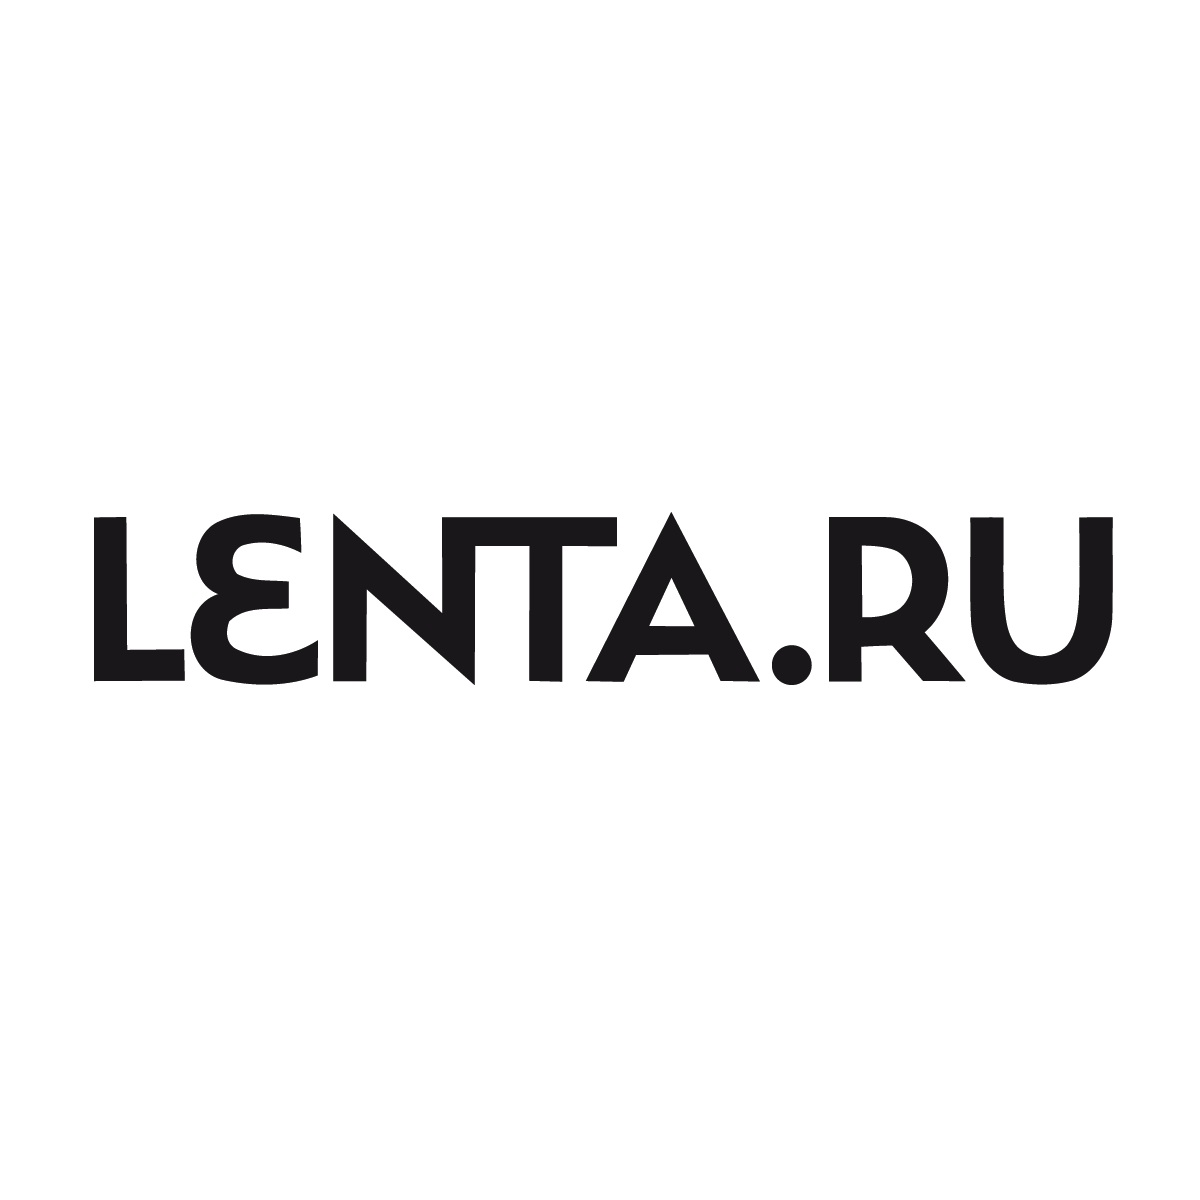 Сми в лентах. Лента ру. Лента ру эмблема. Lenta logo издание. Лента новостей лого.